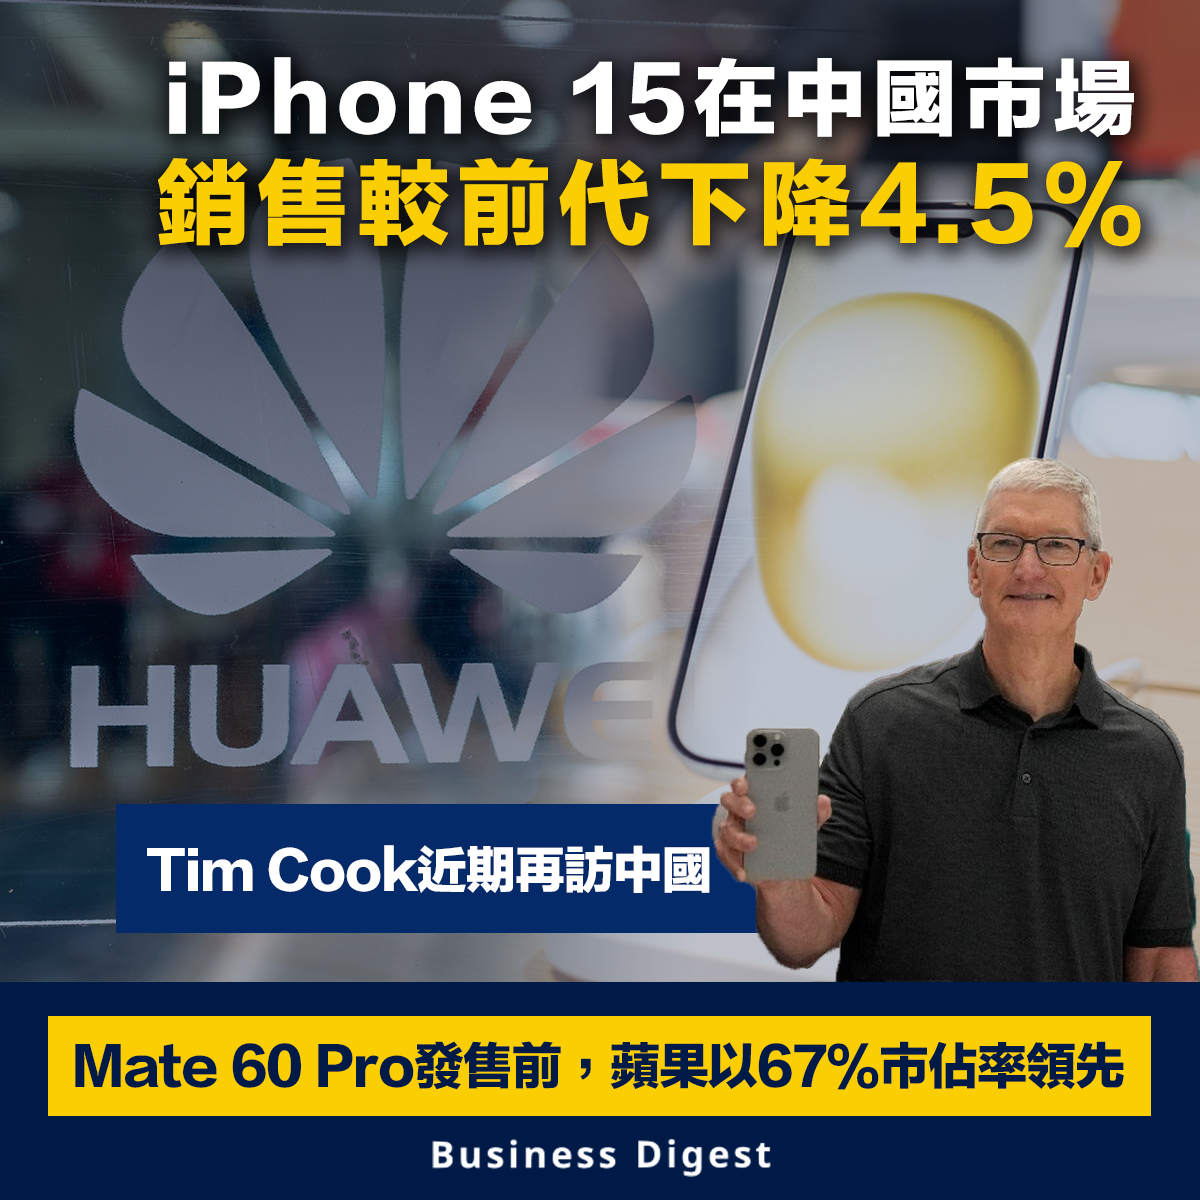 【手機大戰】iPhone 15在中國市場的銷售較前代下降4.5%